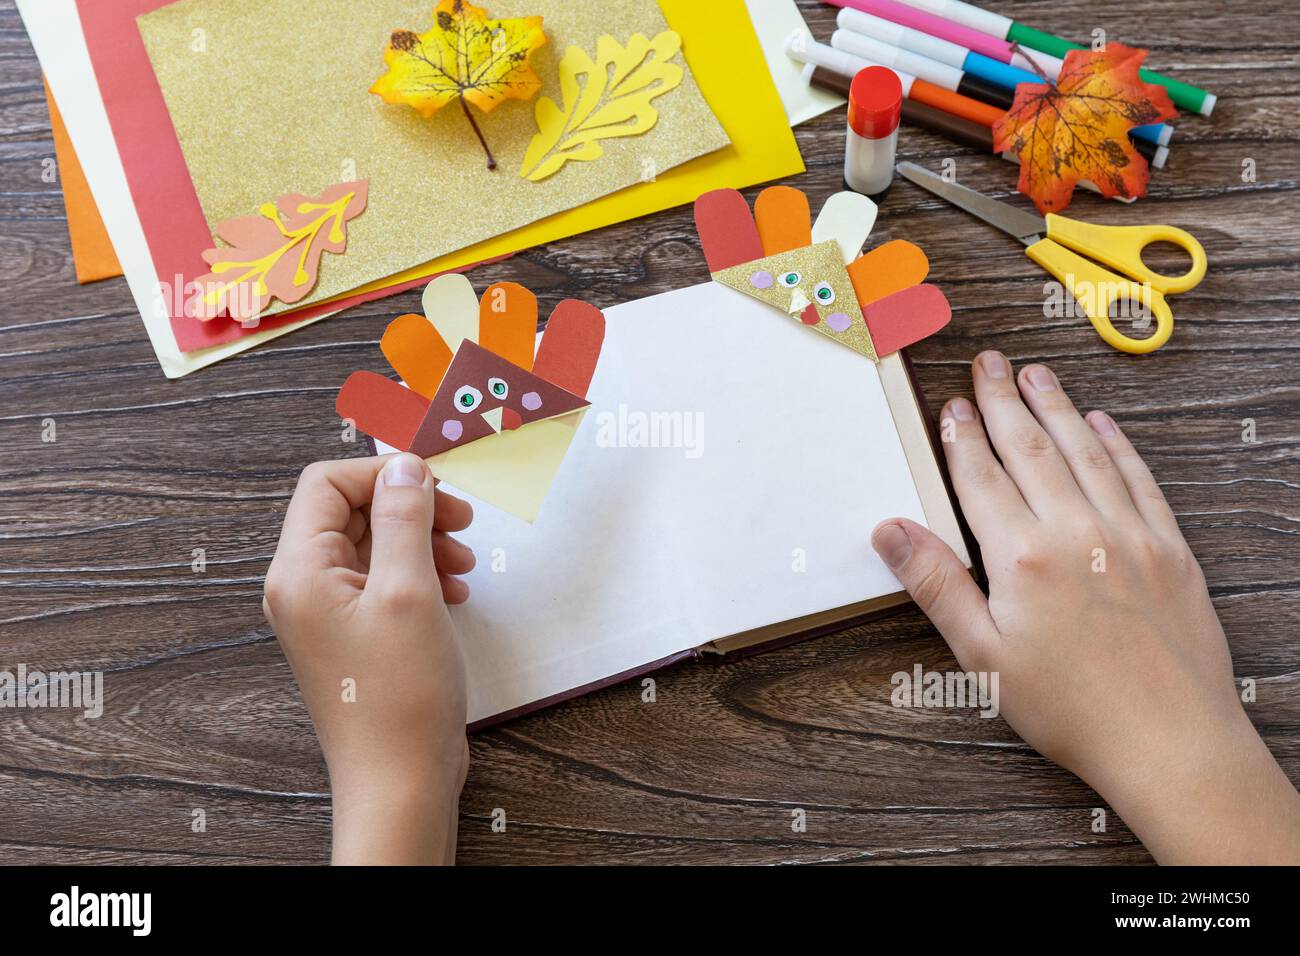 In den Händen eines Kindes Thanksgiving Handwerk Lesezeichen putenpapier. Kinderkunstprojekt, handgefertigt, Basteln für Kinder. Stockfoto